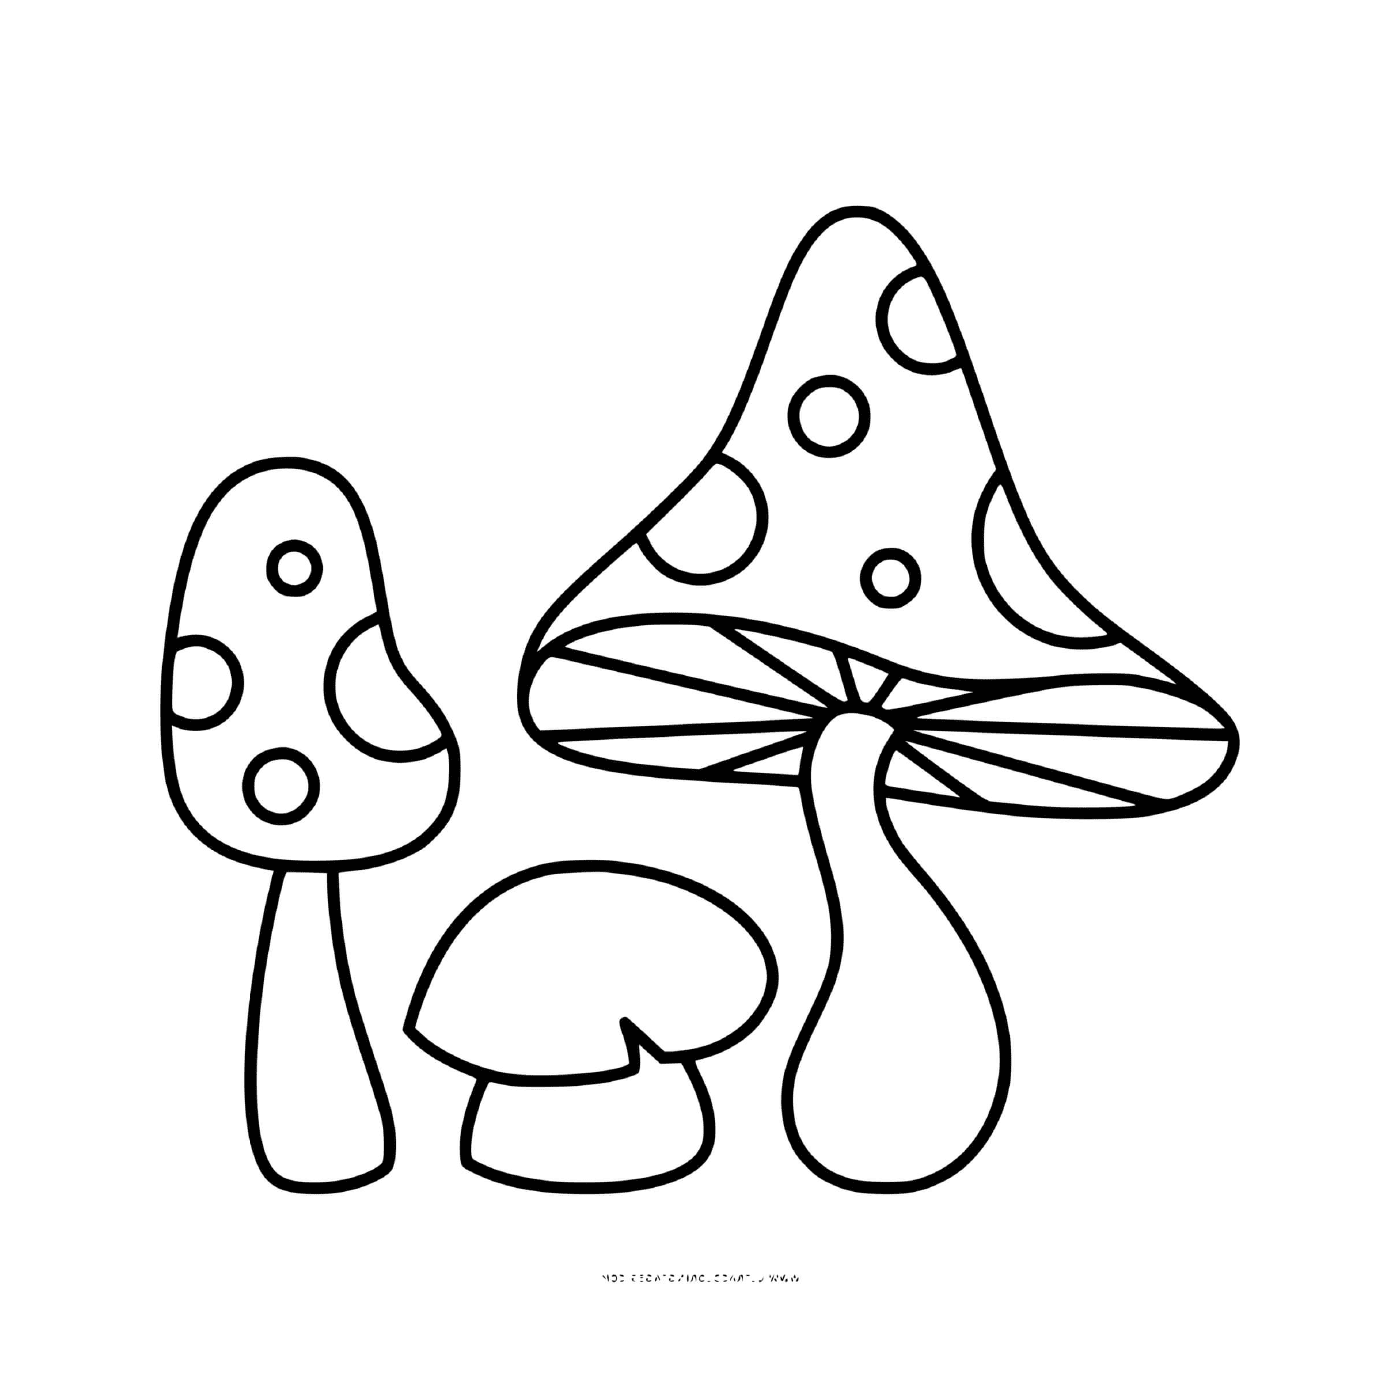 coloriage champignon amanite jonquille et phalloide